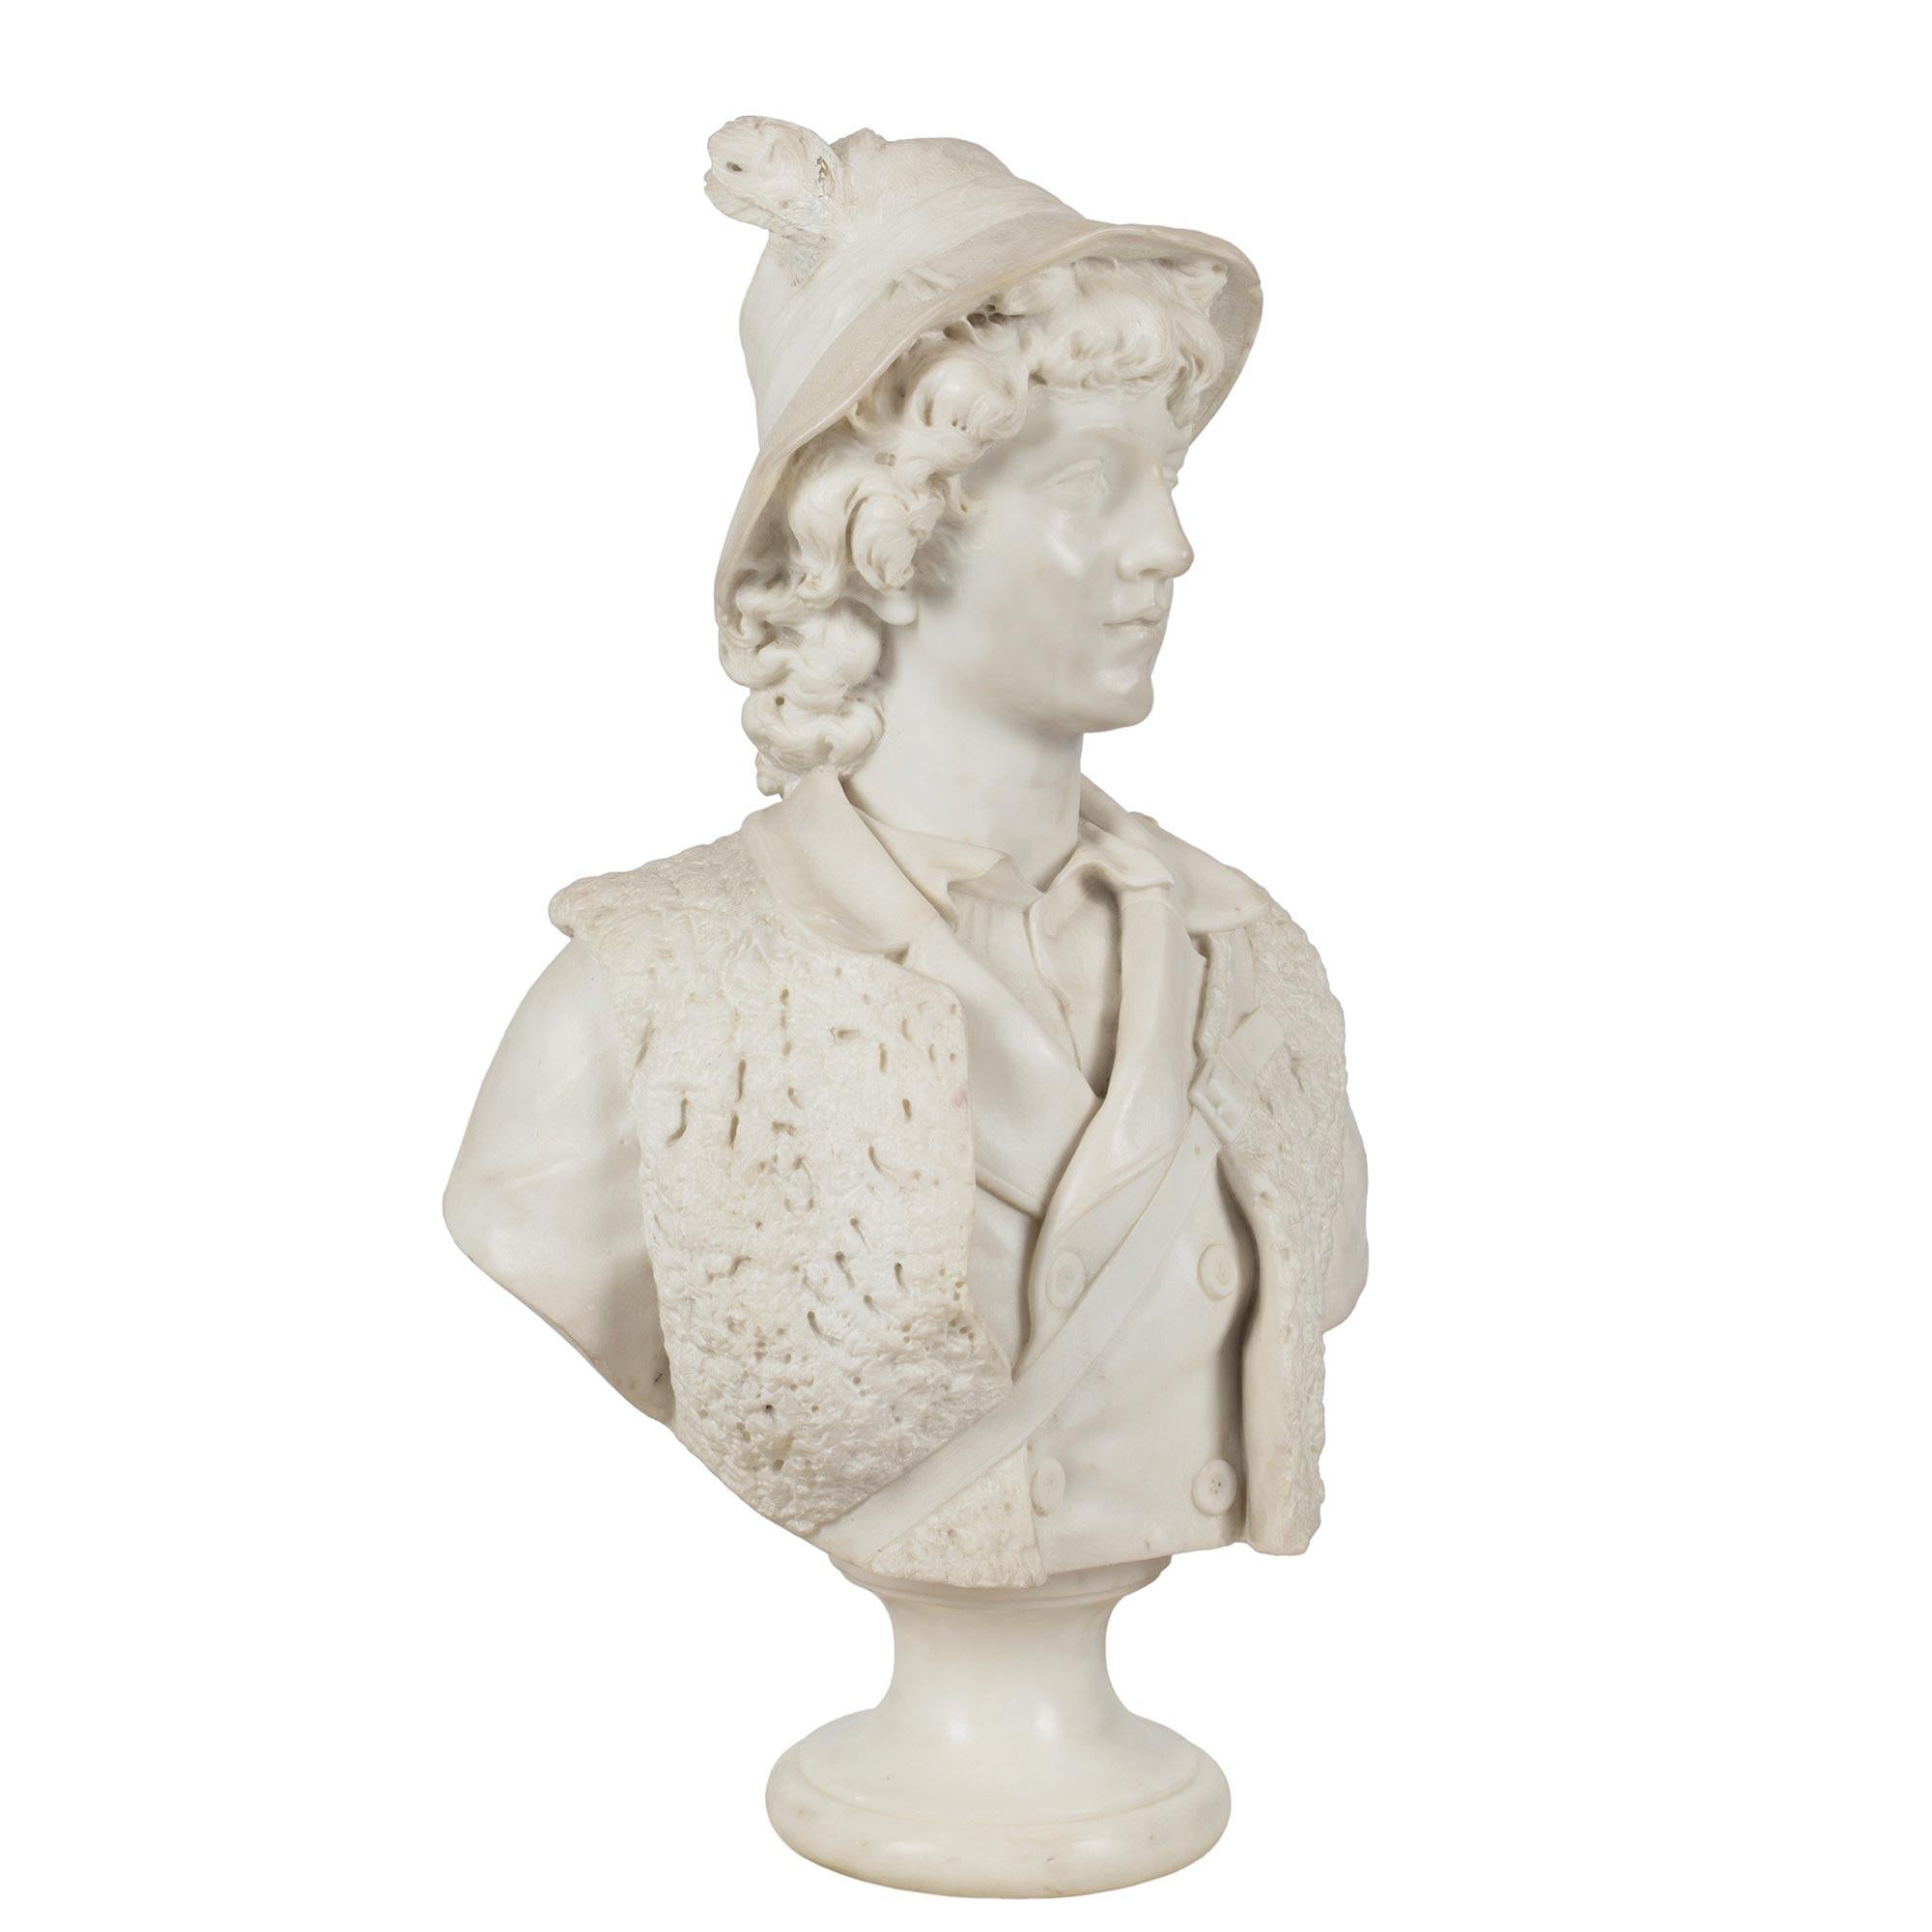 Un buste impressionnant et merveilleusement exécuté en marbre blanc de Carrare italien du XIXe siècle représentant un jeune chasseur. Le buste est surélevé par un piédestal circulaire à socle moucheté. Le charmant jeune homme porte une chemise avec